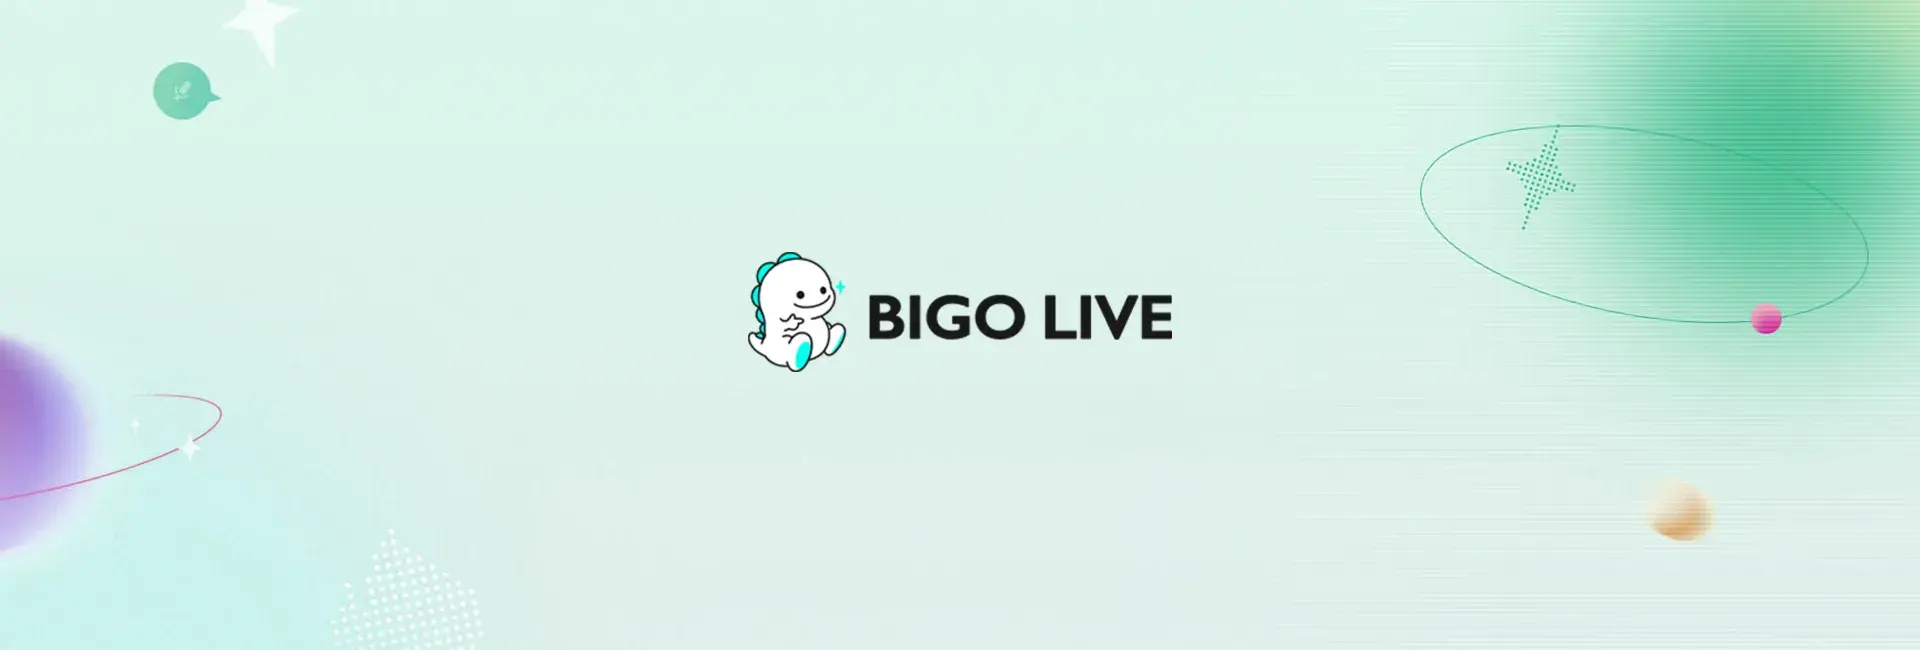 Bigo Live - 1178 Diamonds (Global)	